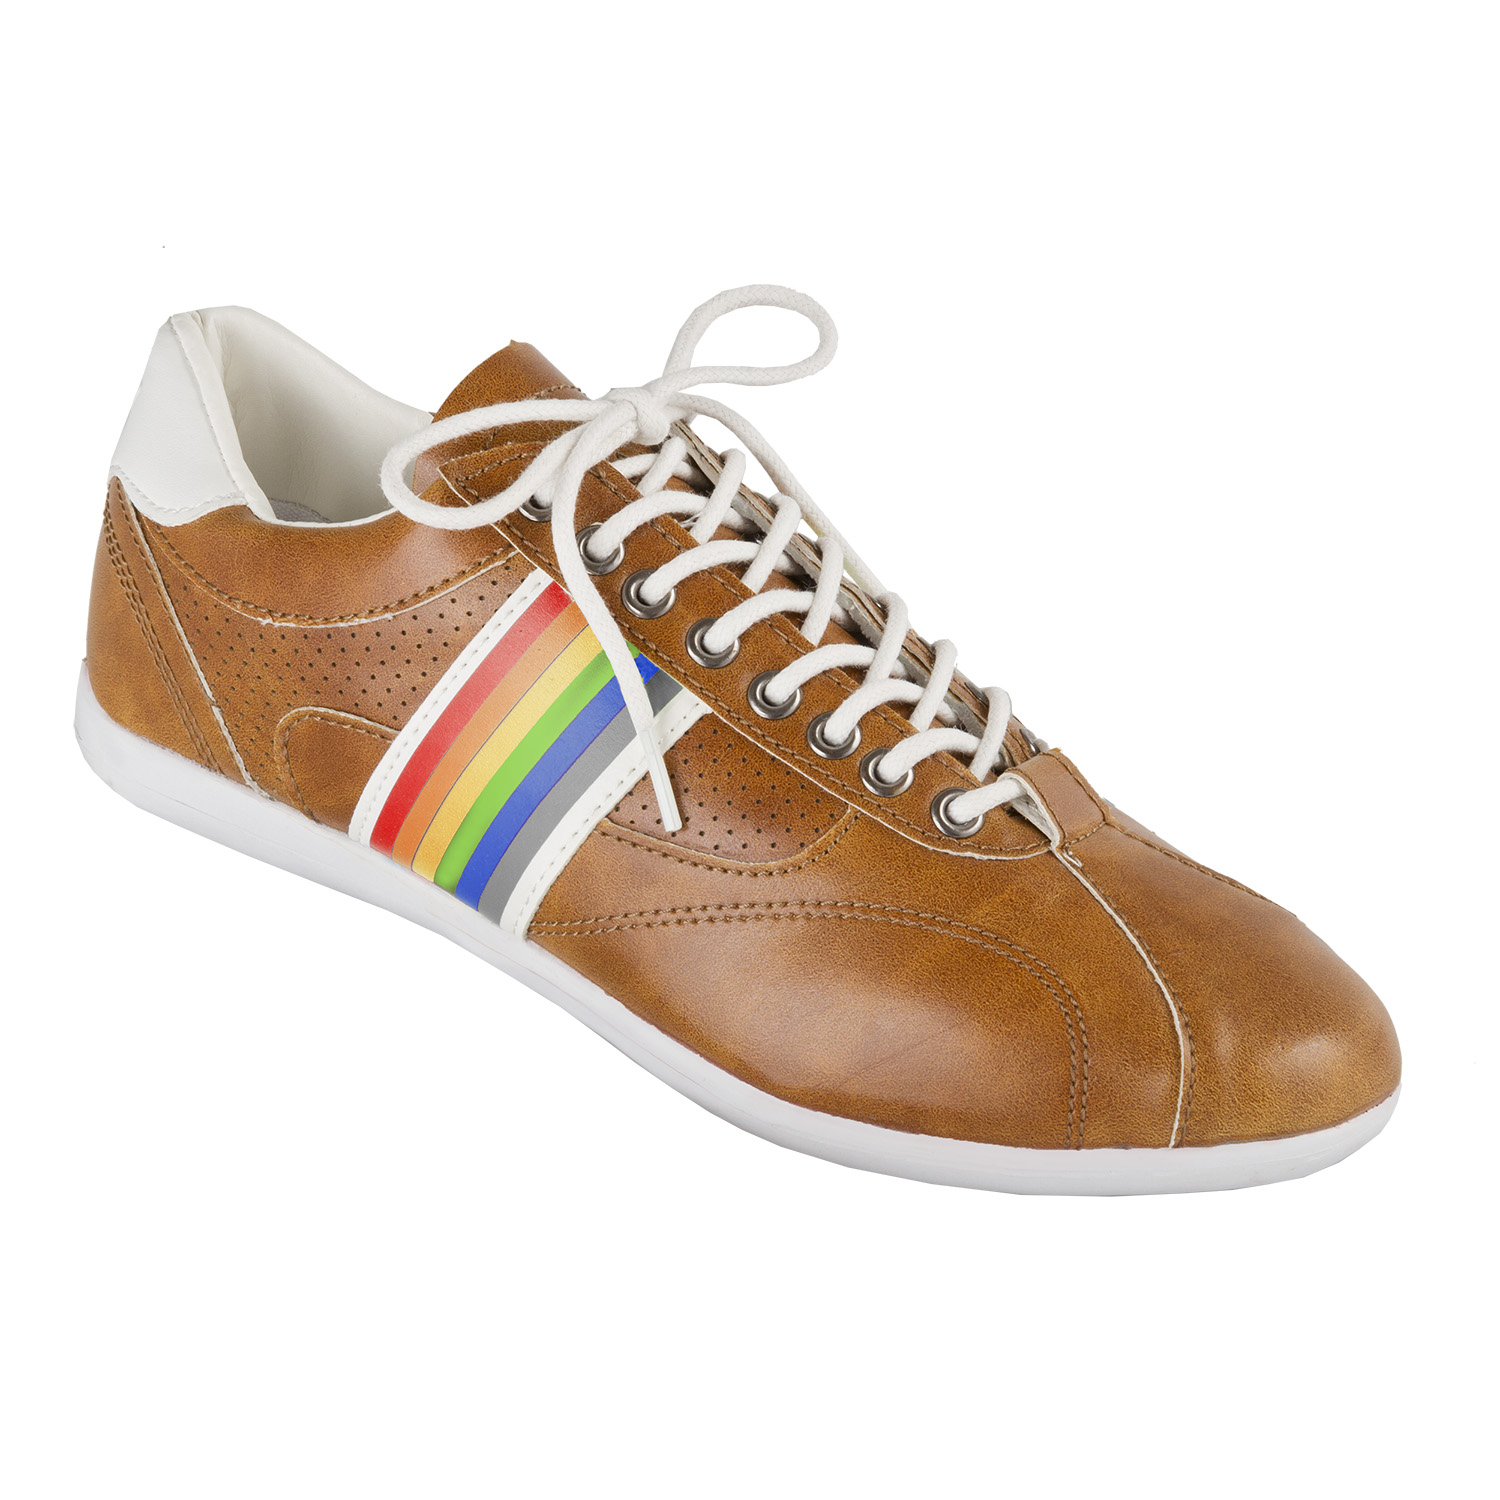 Freizeit-Schuh Vintage Gr. 40 in Braun/Weiß/Multicolor